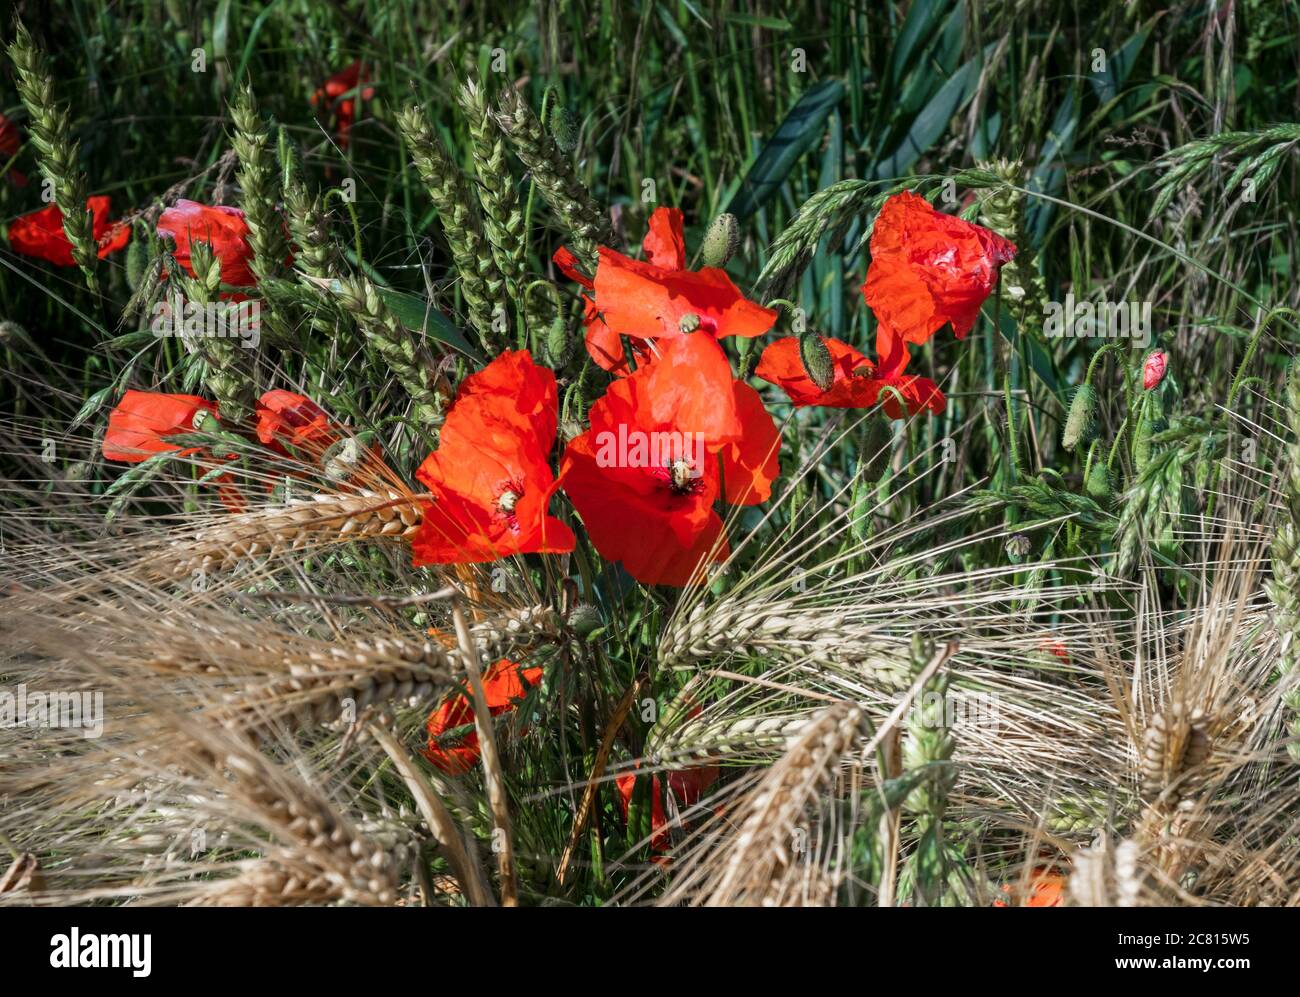 Mohnblumen - gemeine Wildblumen / Unkraut im Sommer Ackerland in der englischen Landschaft die gemeine Mohnblume Papaver rhoeas Stockfoto